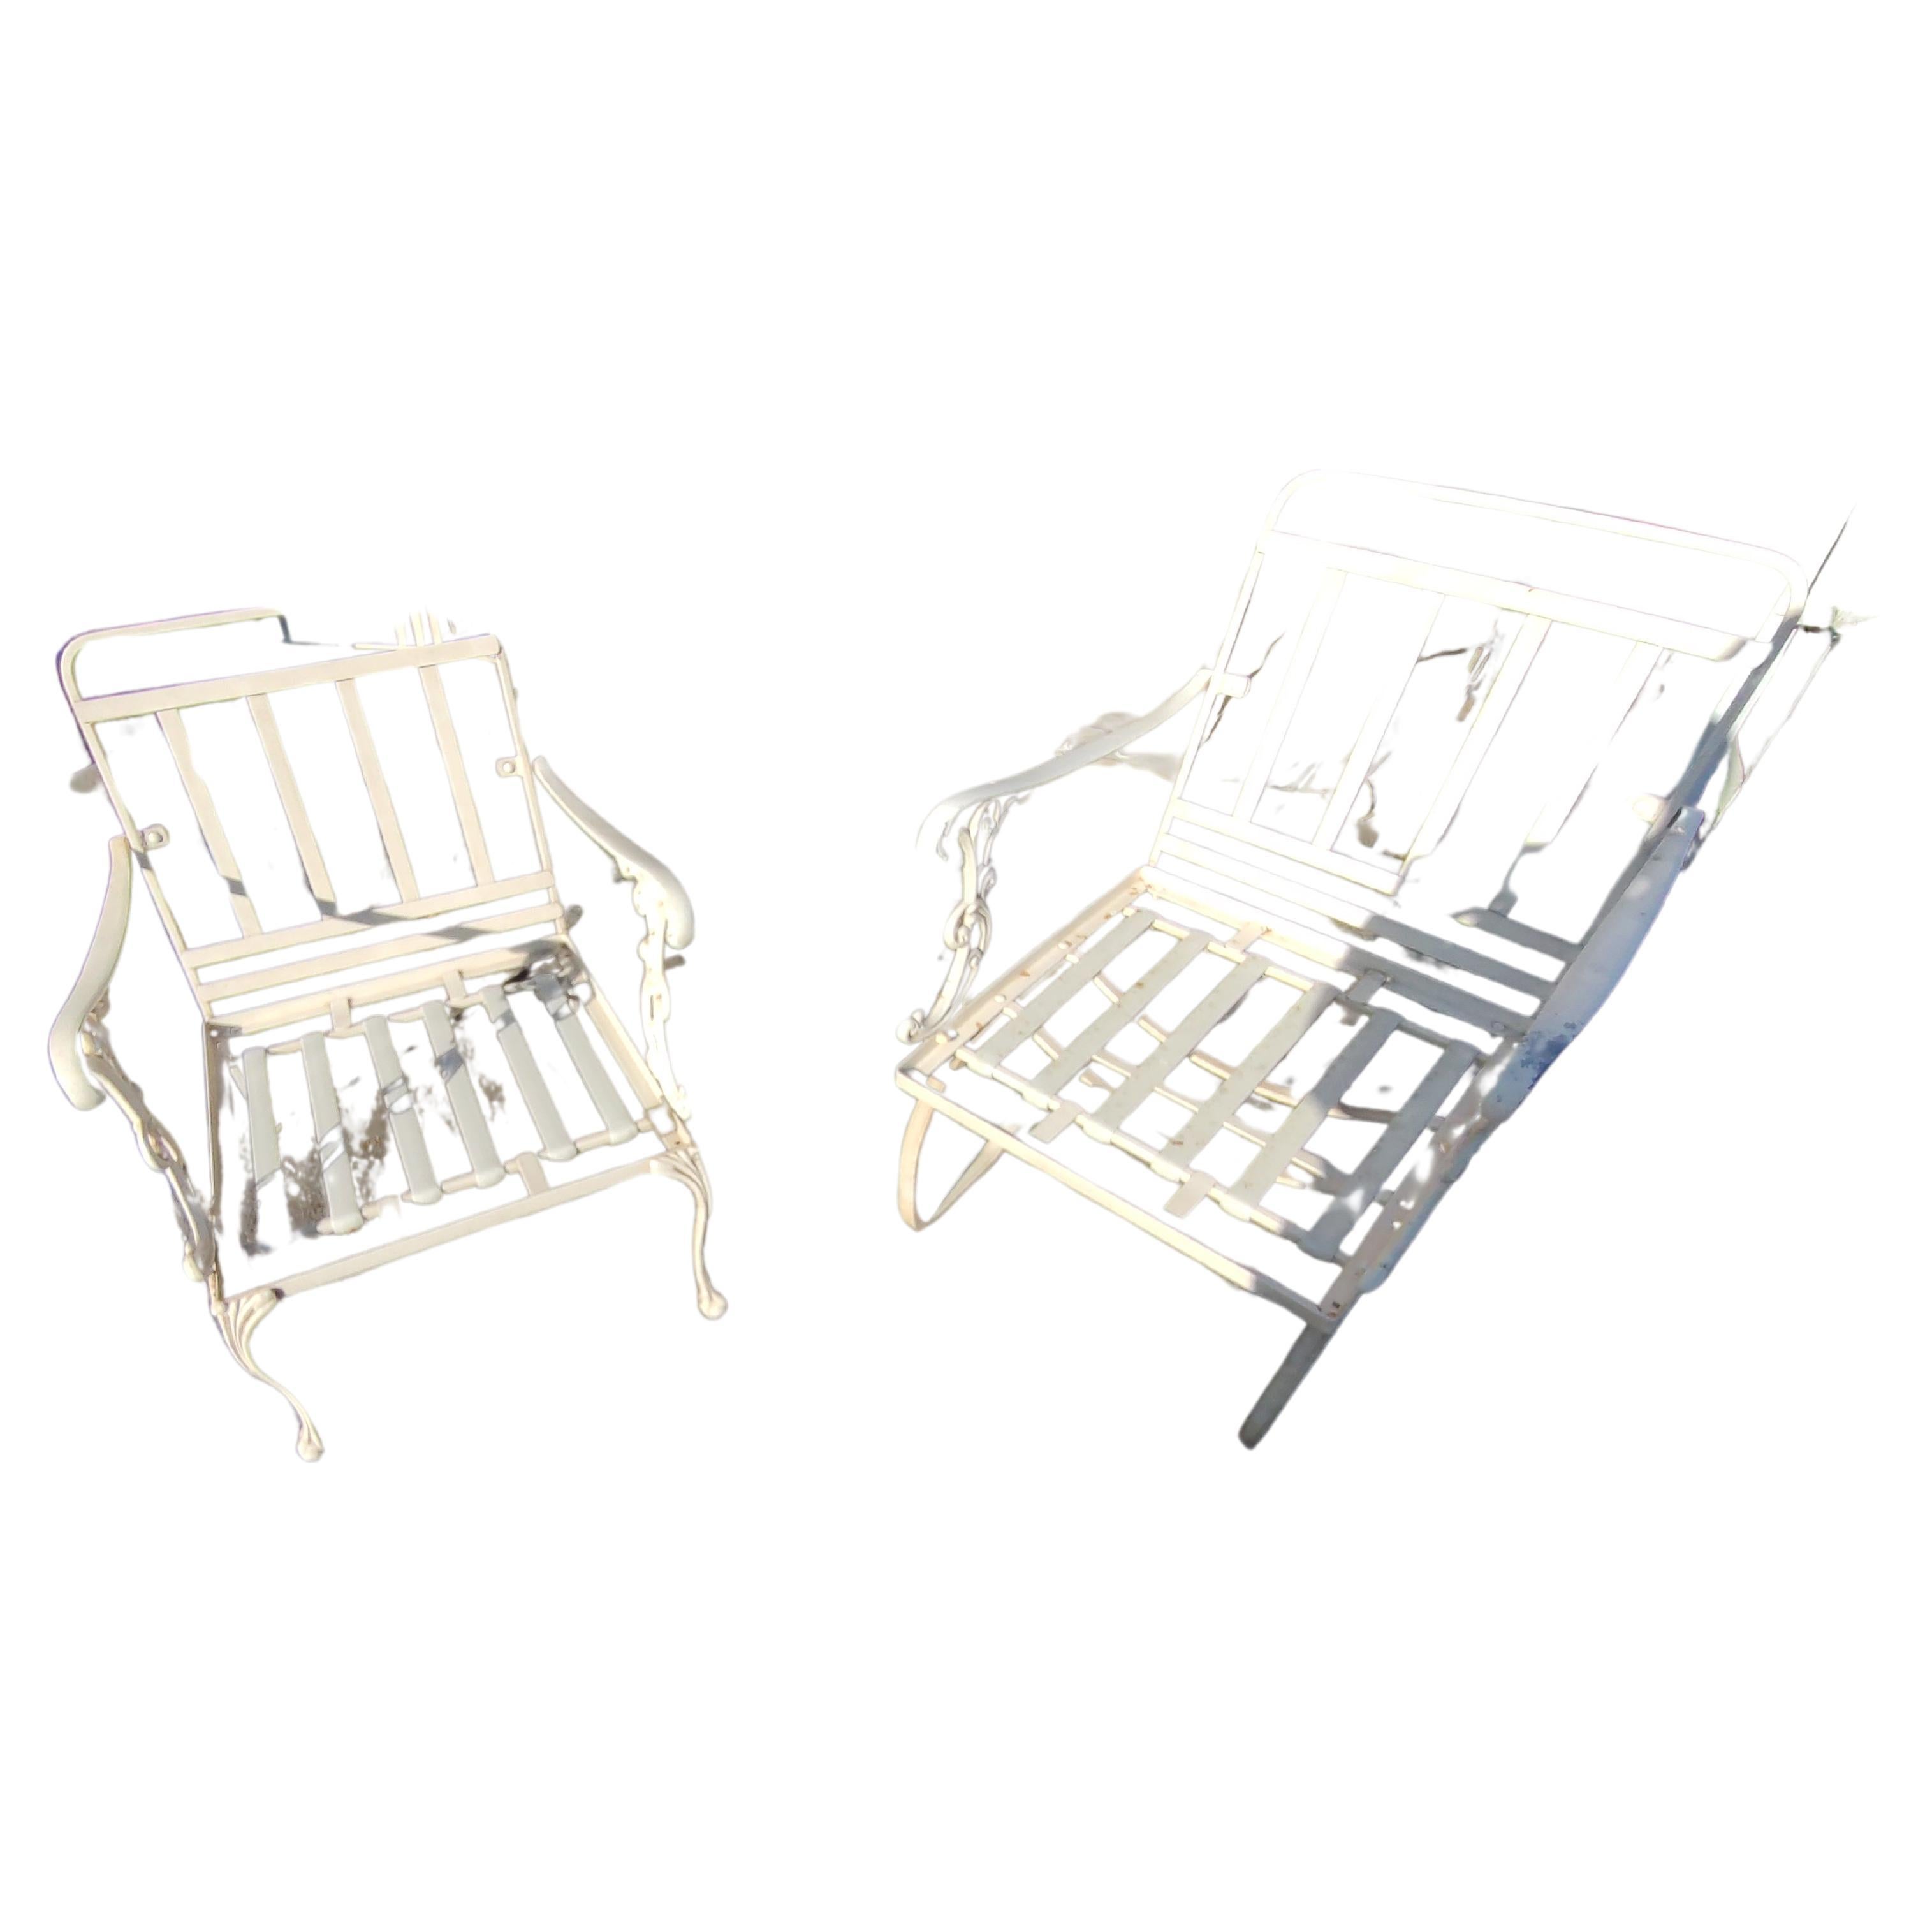 Fabuleuse paire de chaises longues légères en fonte d'aluminium avec coussins entièrement gaufrés par Molla en Italie.
C1970, cet ensemble a vécu dans son intégralité. La peinture en poudre de couleur blanc cassé fait partie d'un grand ensemble qui